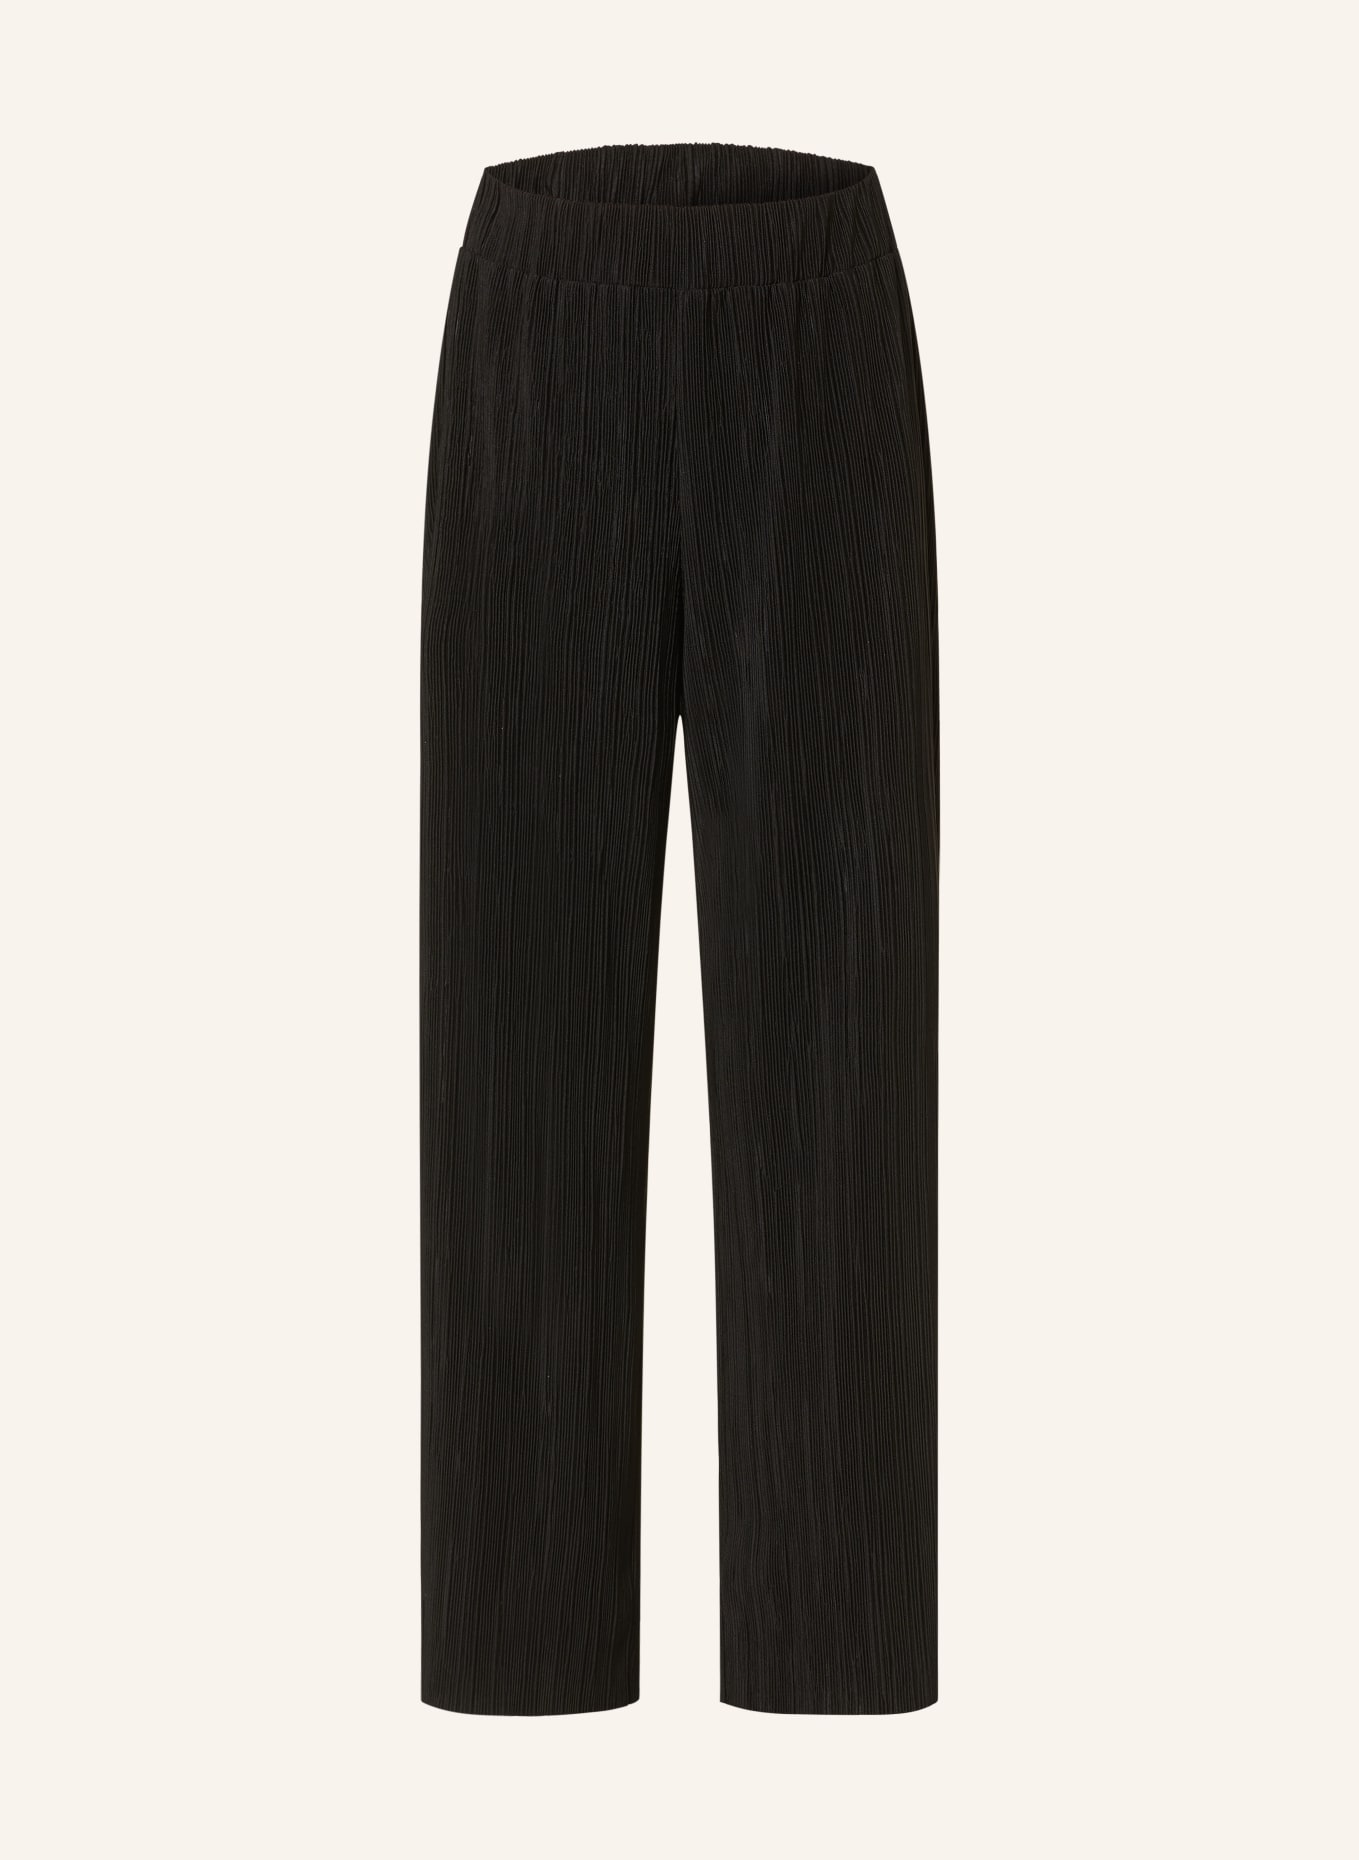 CARTOON Pleated pants, Color: BLACK (Image 1)